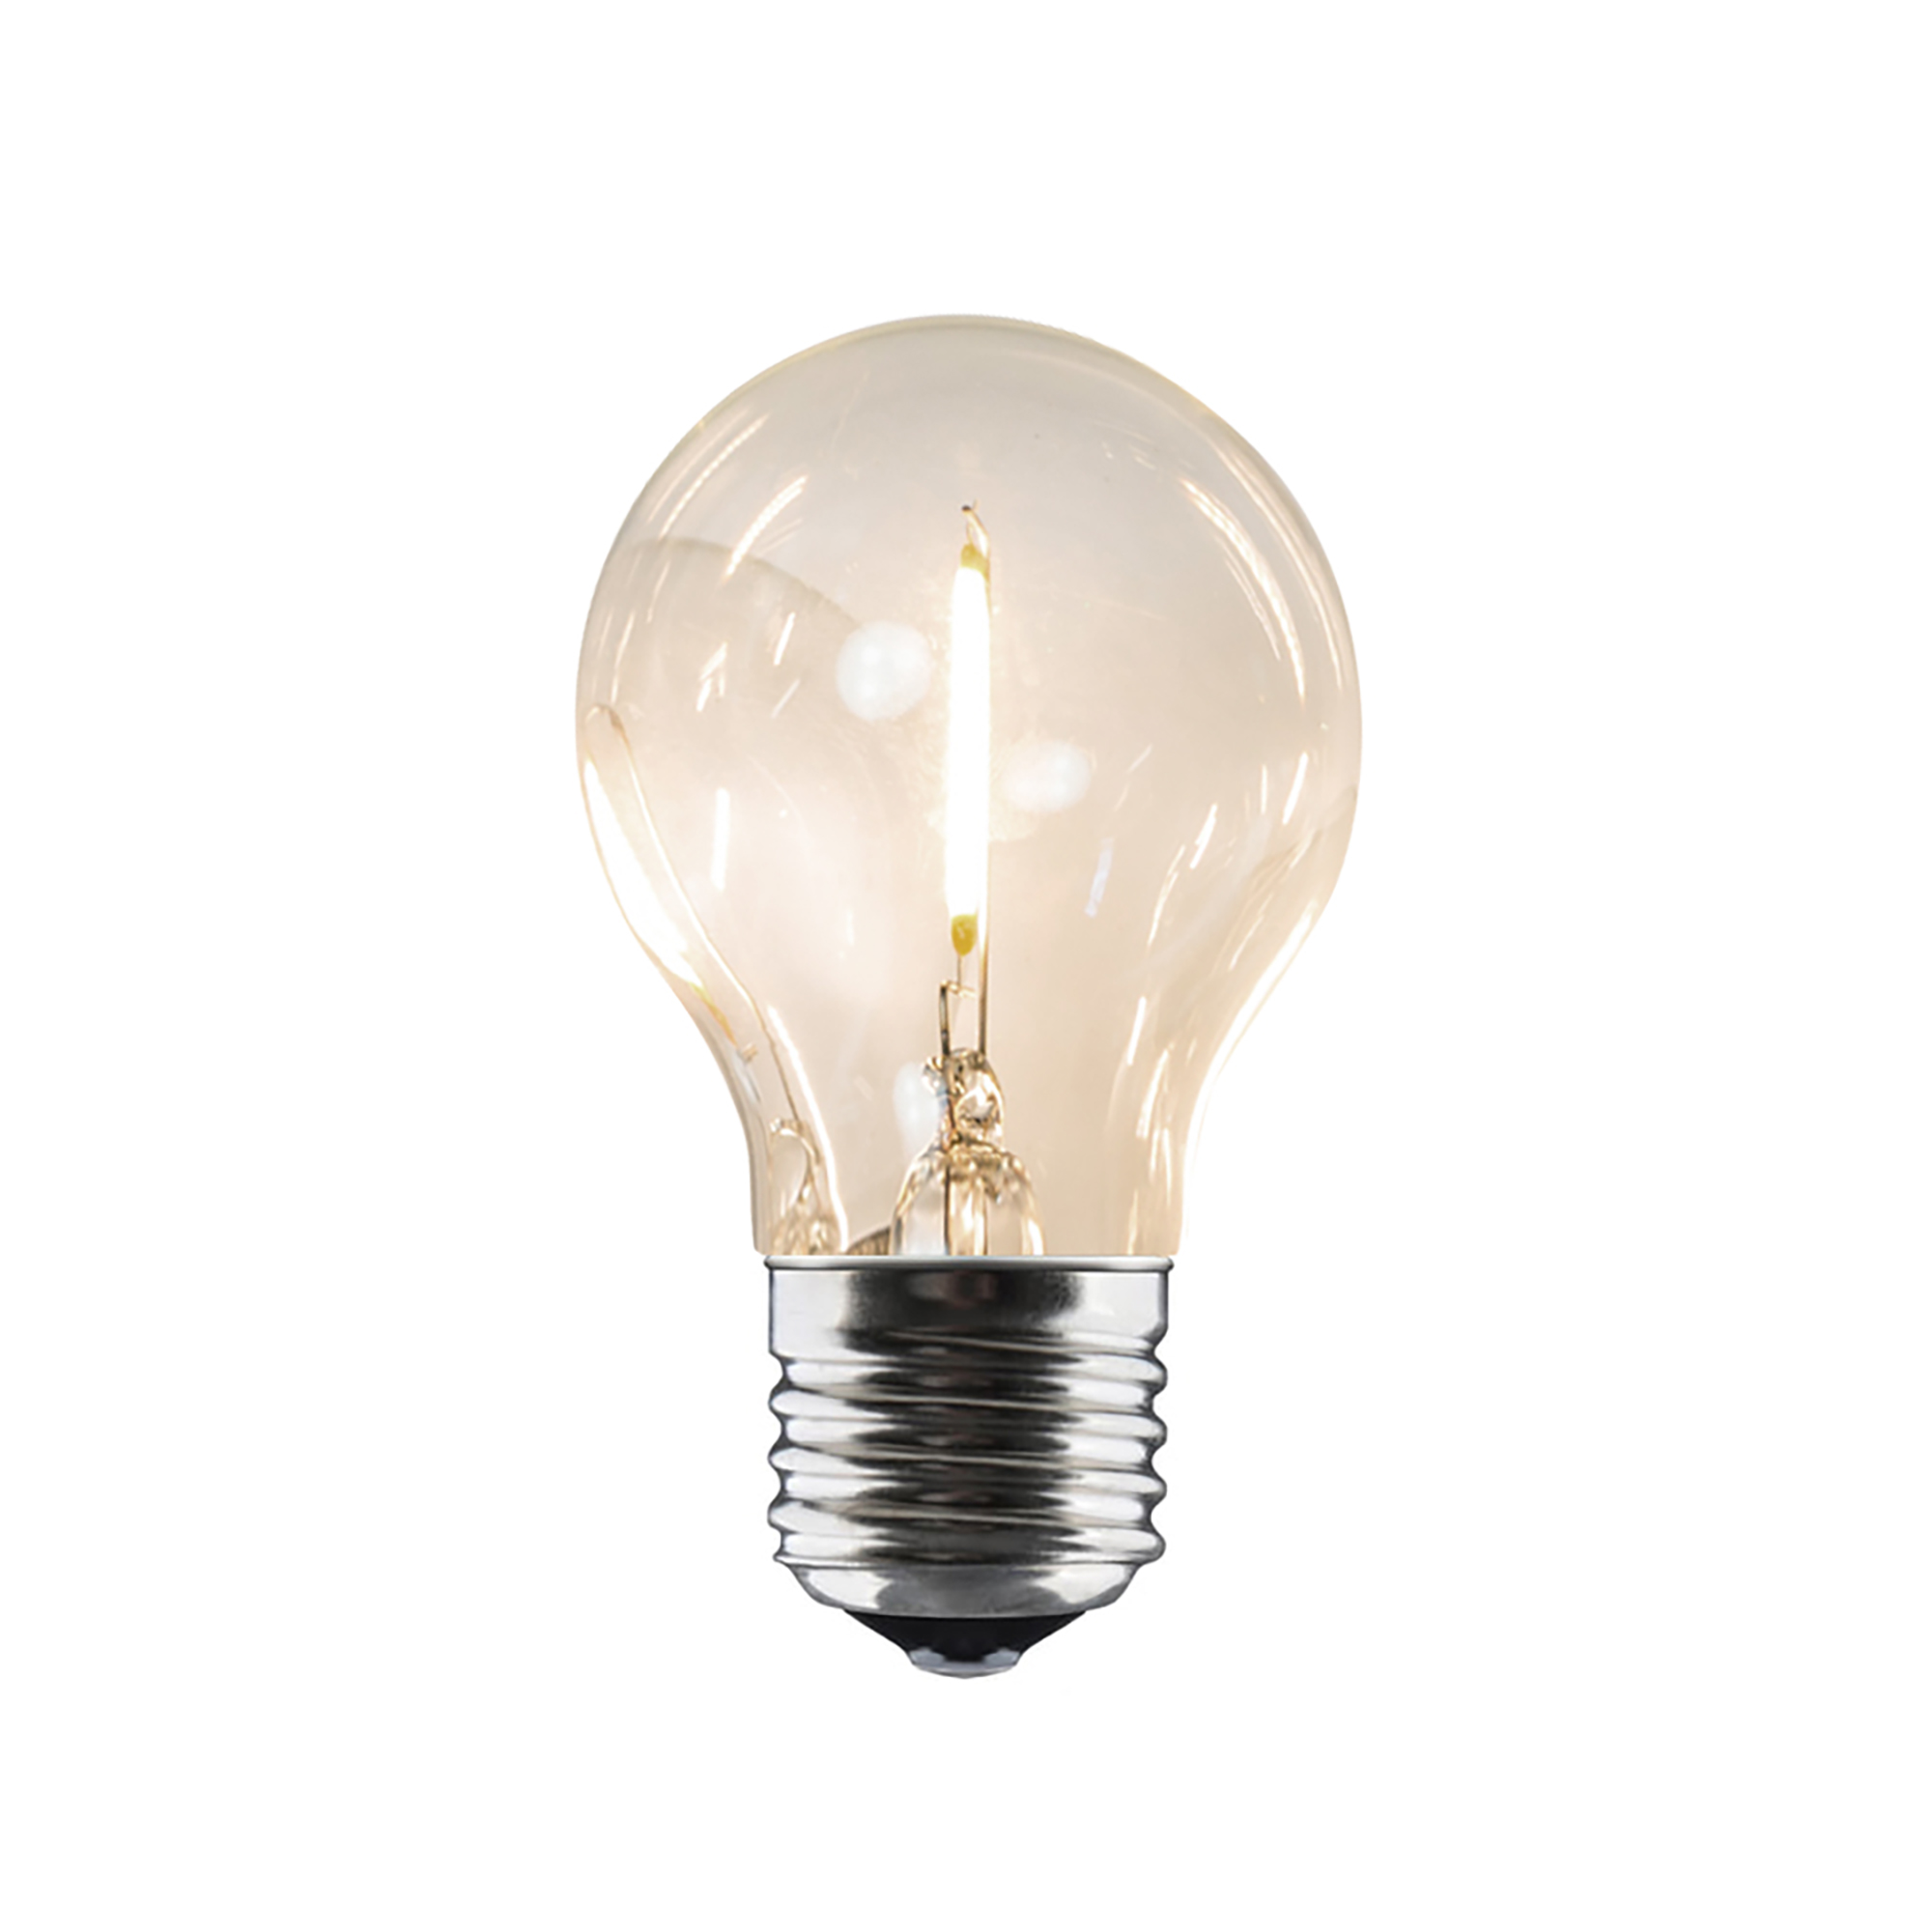 Collection - Ampoule de rechange pour chane lumineuse LED - transparent/ronde/E27/6W/220-240V 50/60Hz/douille avec filetage  gauche